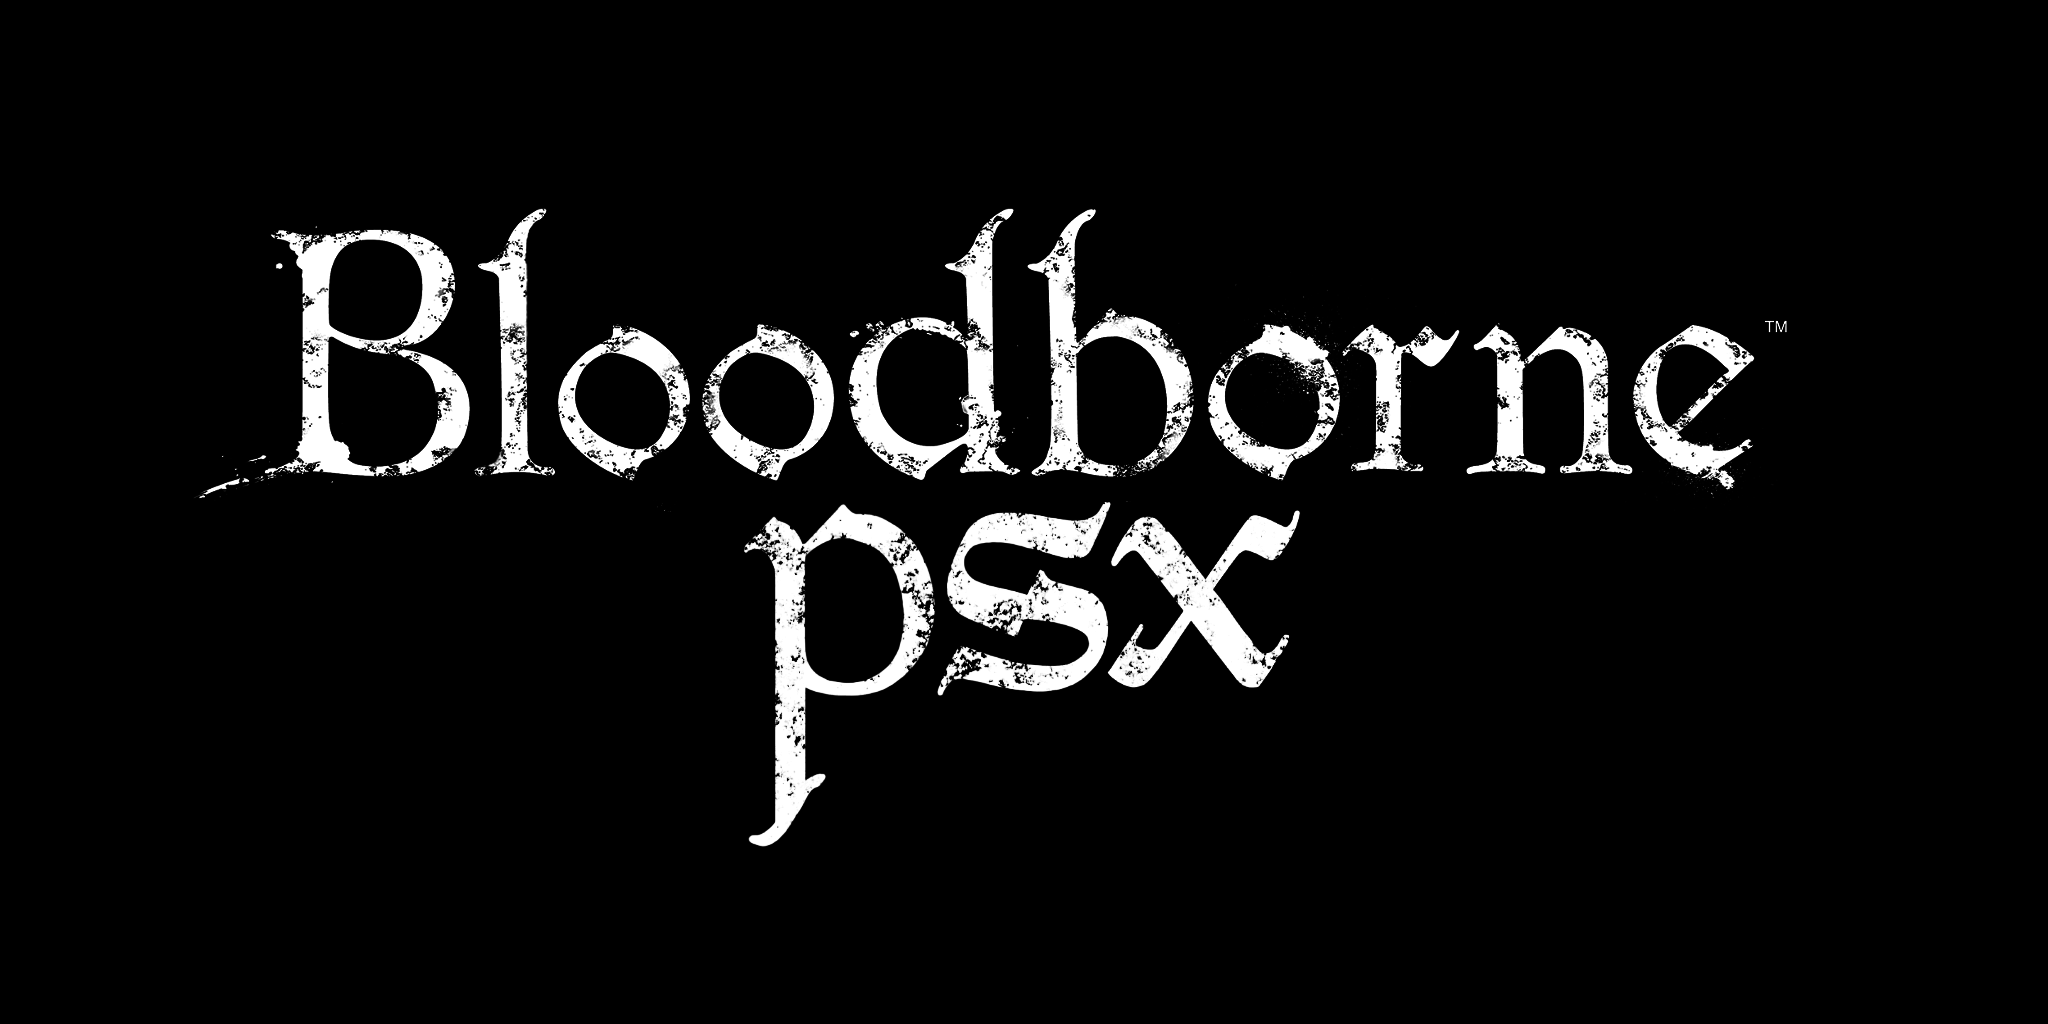 BloodbornePSX